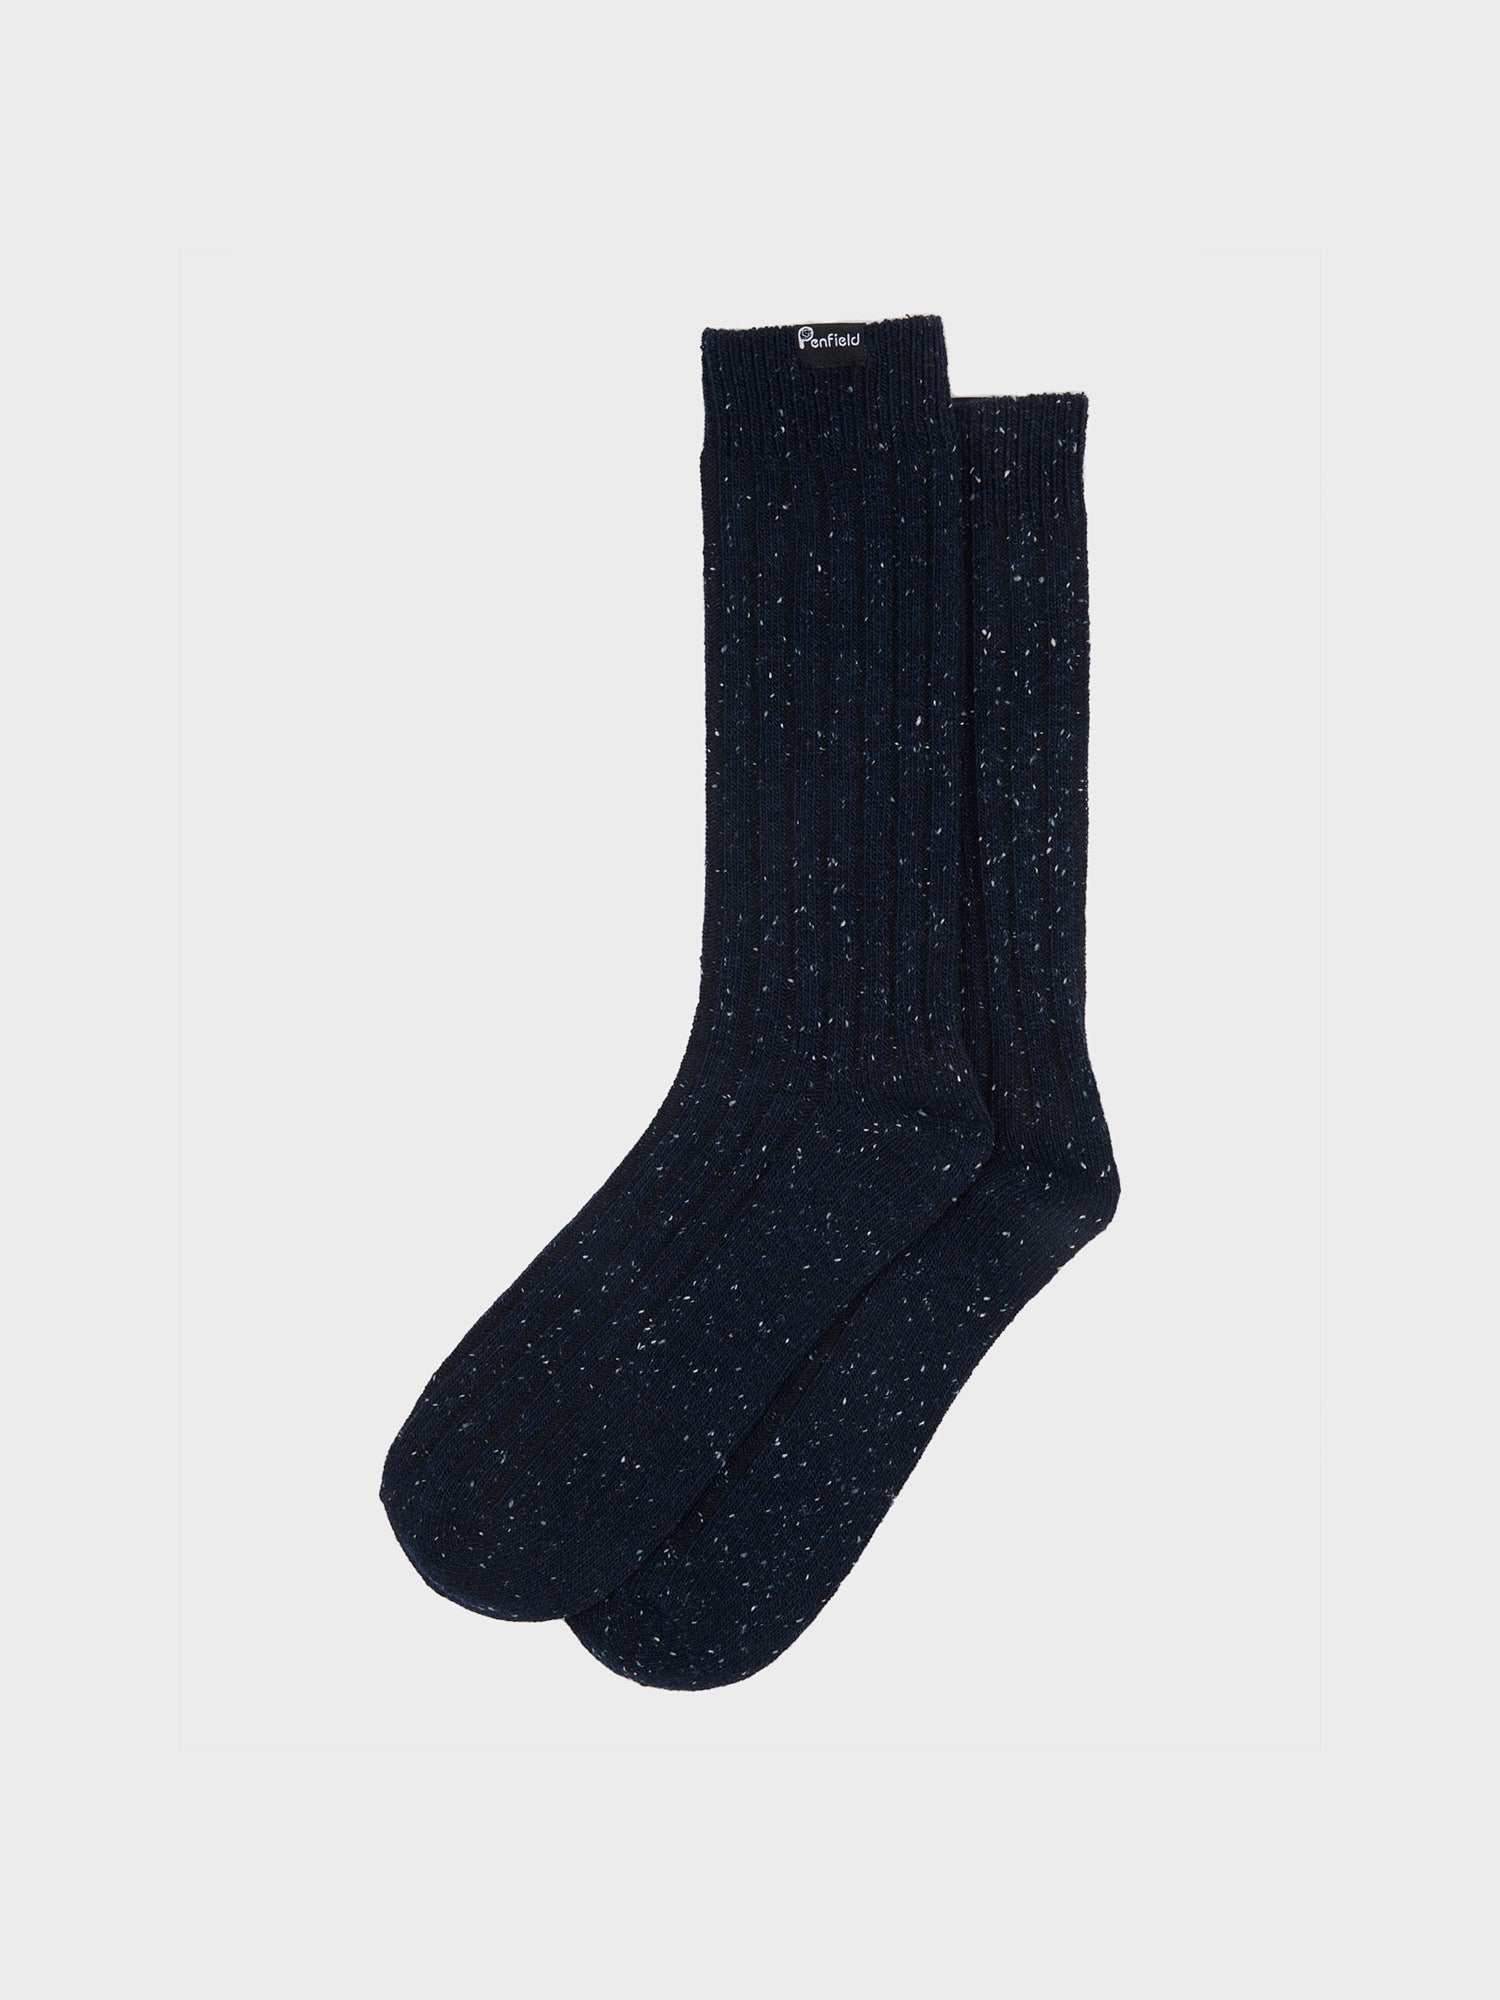 Ribbed Wool Blend Socks in Navy Blue